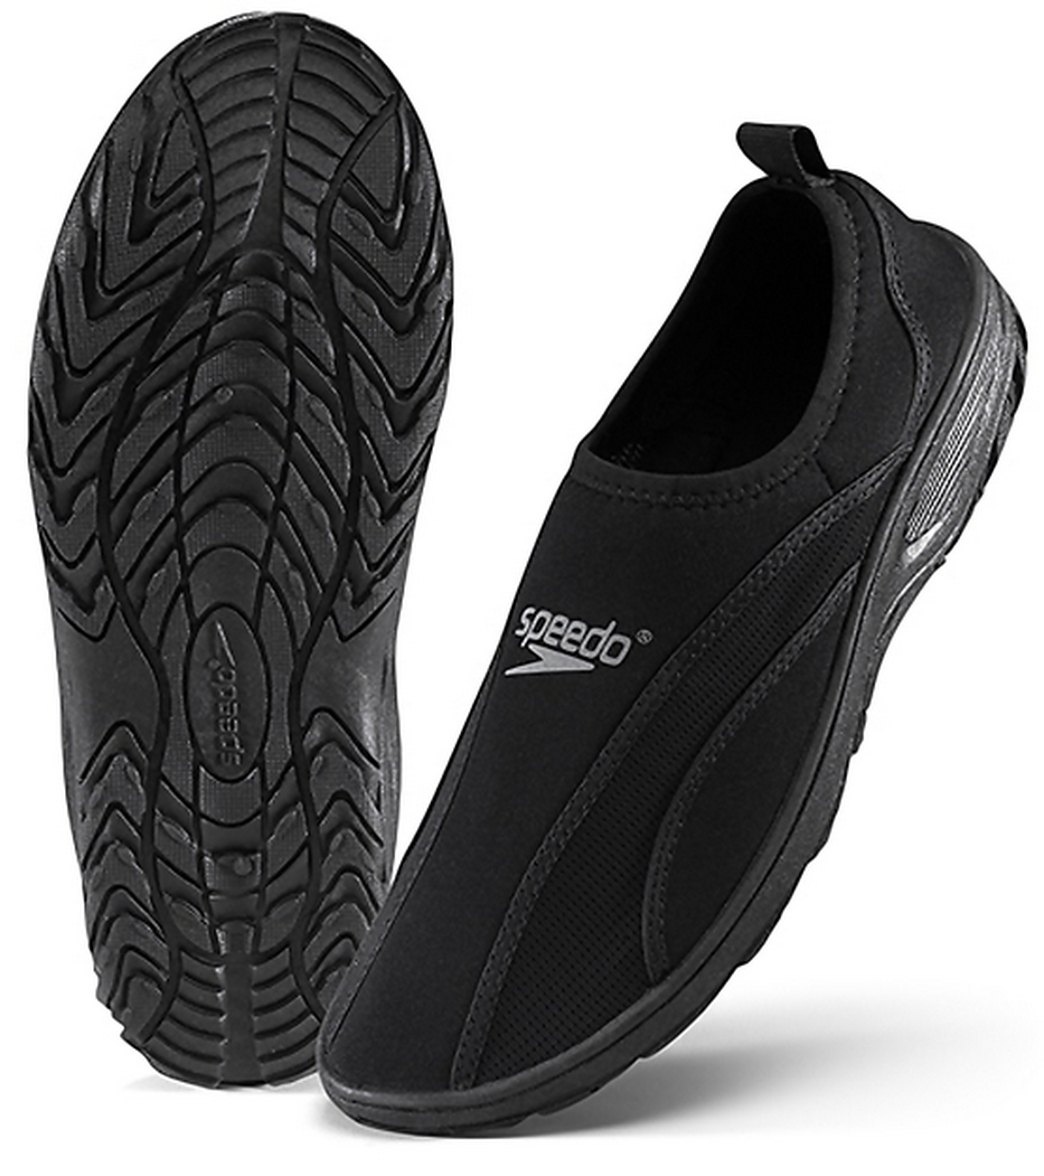 speedo water shoes